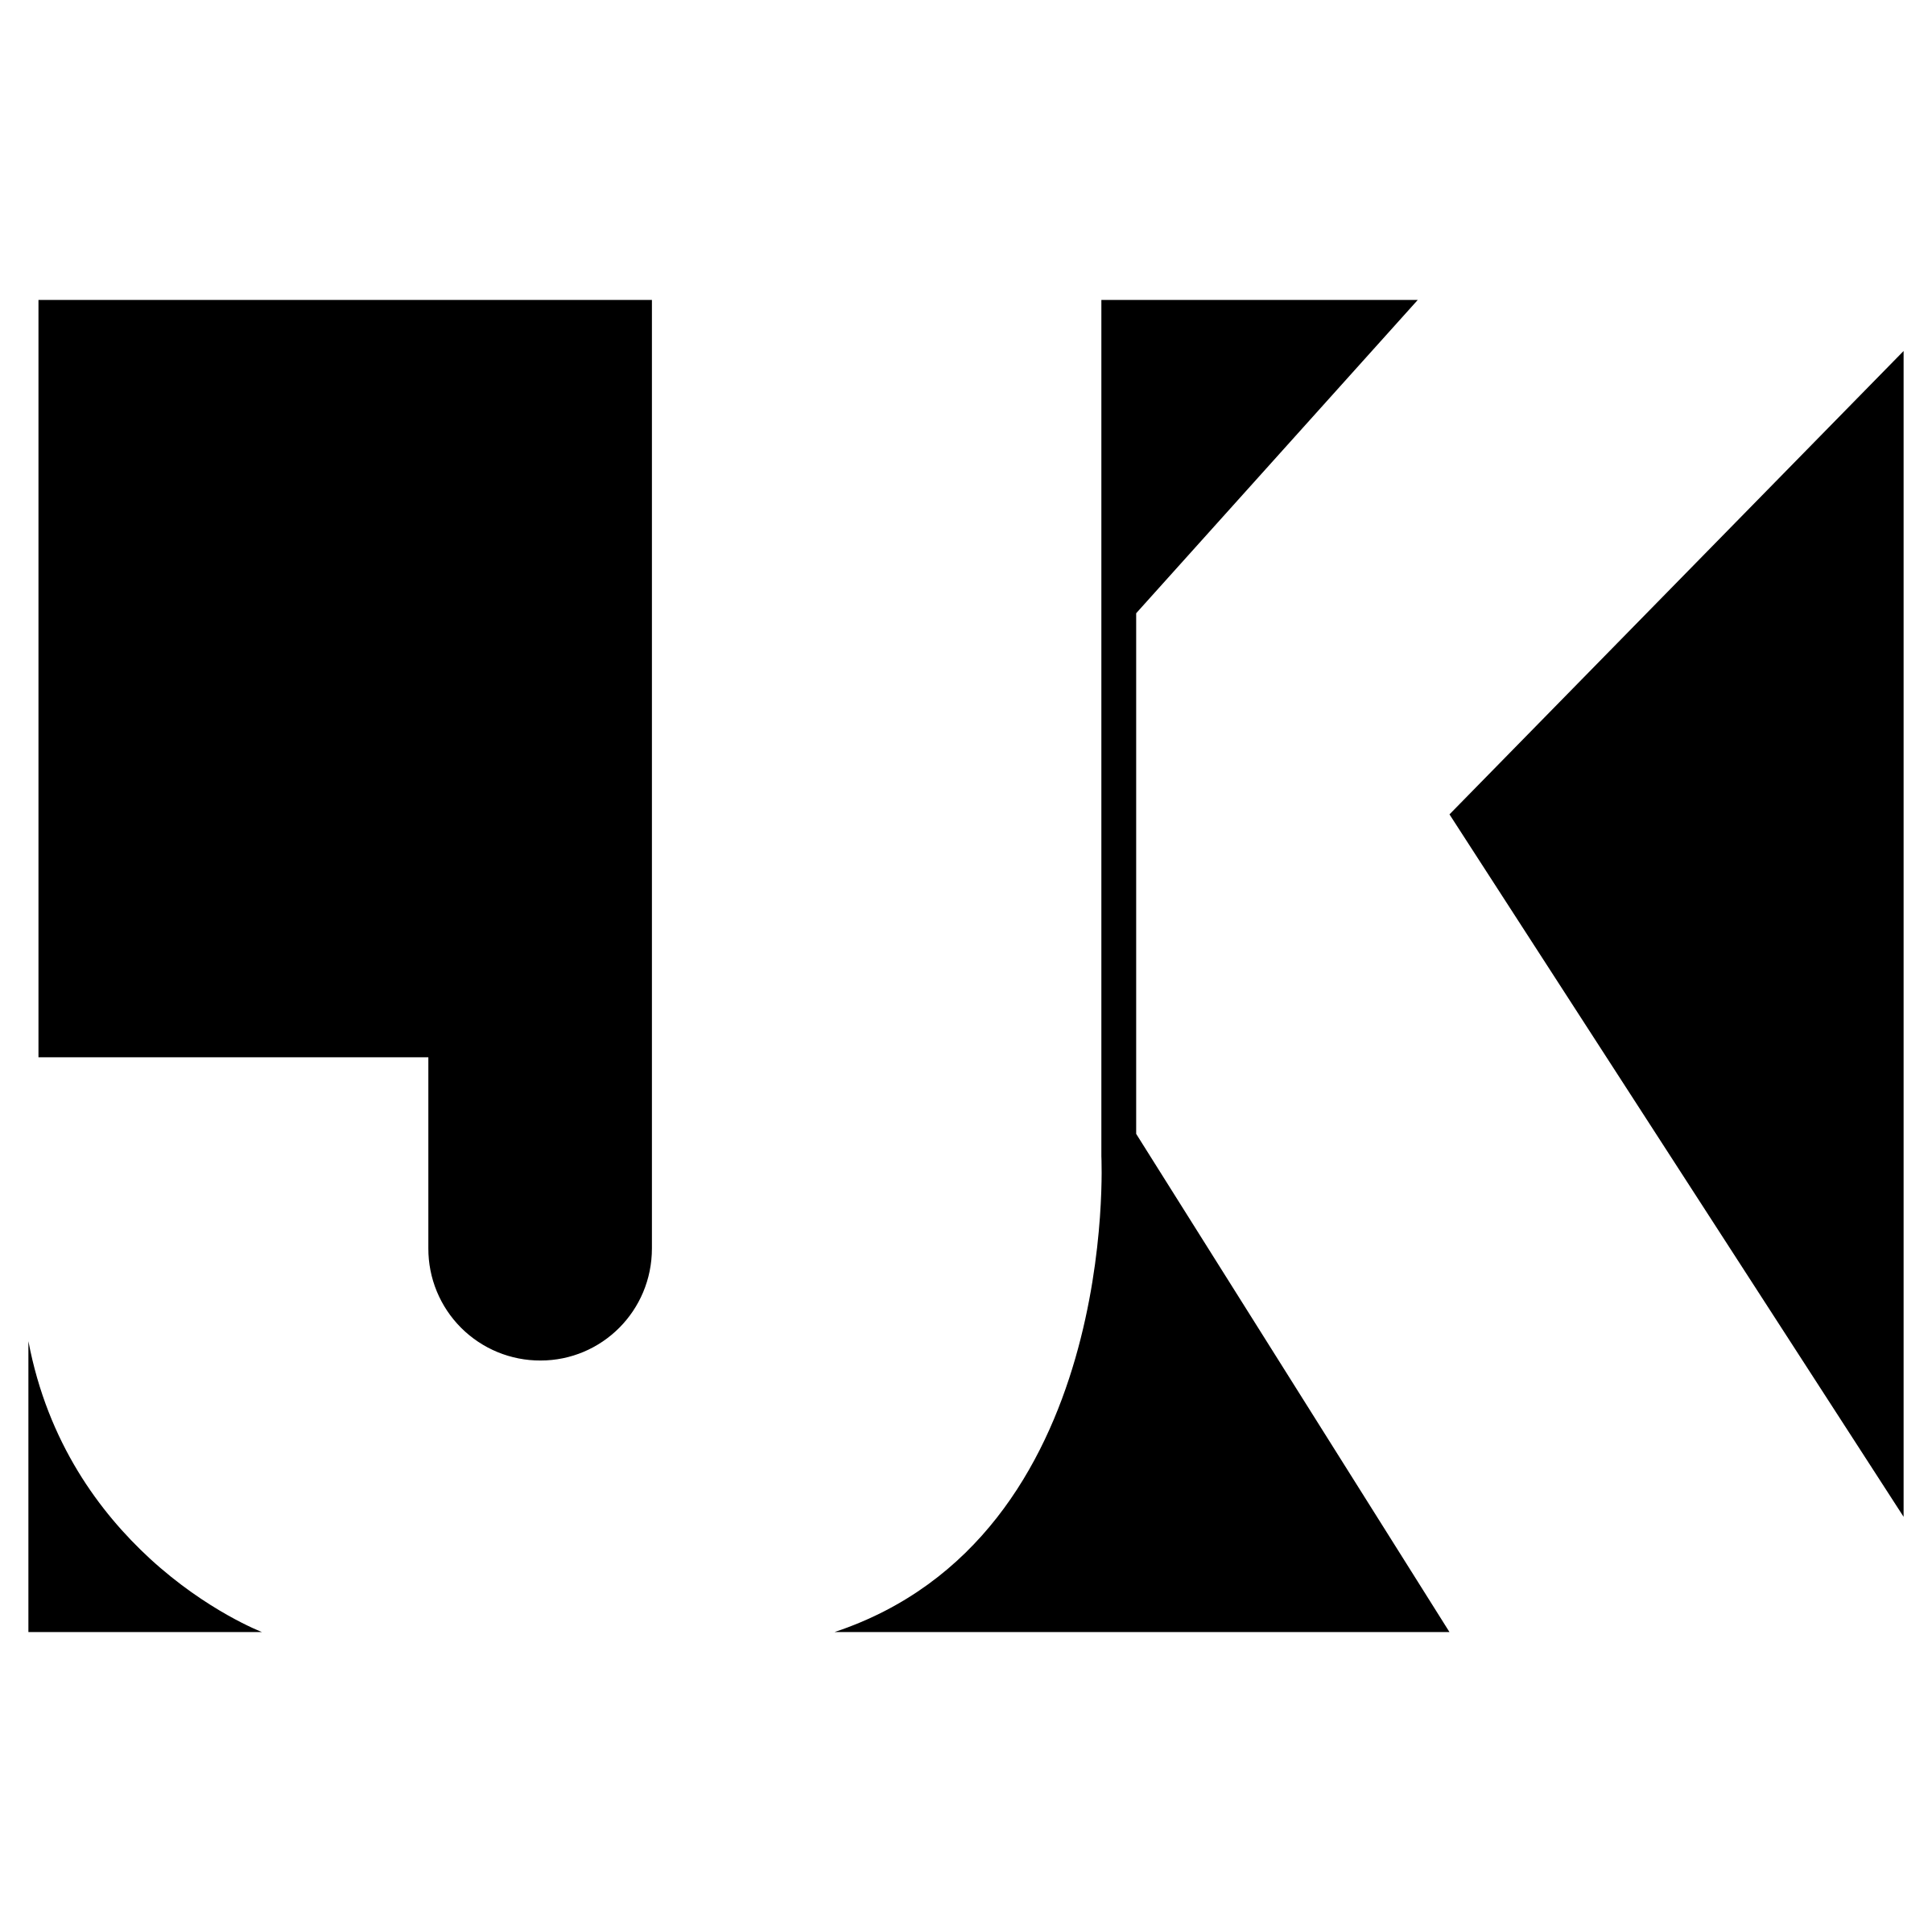 JK Logo PNG Transparent & SVG Vector.